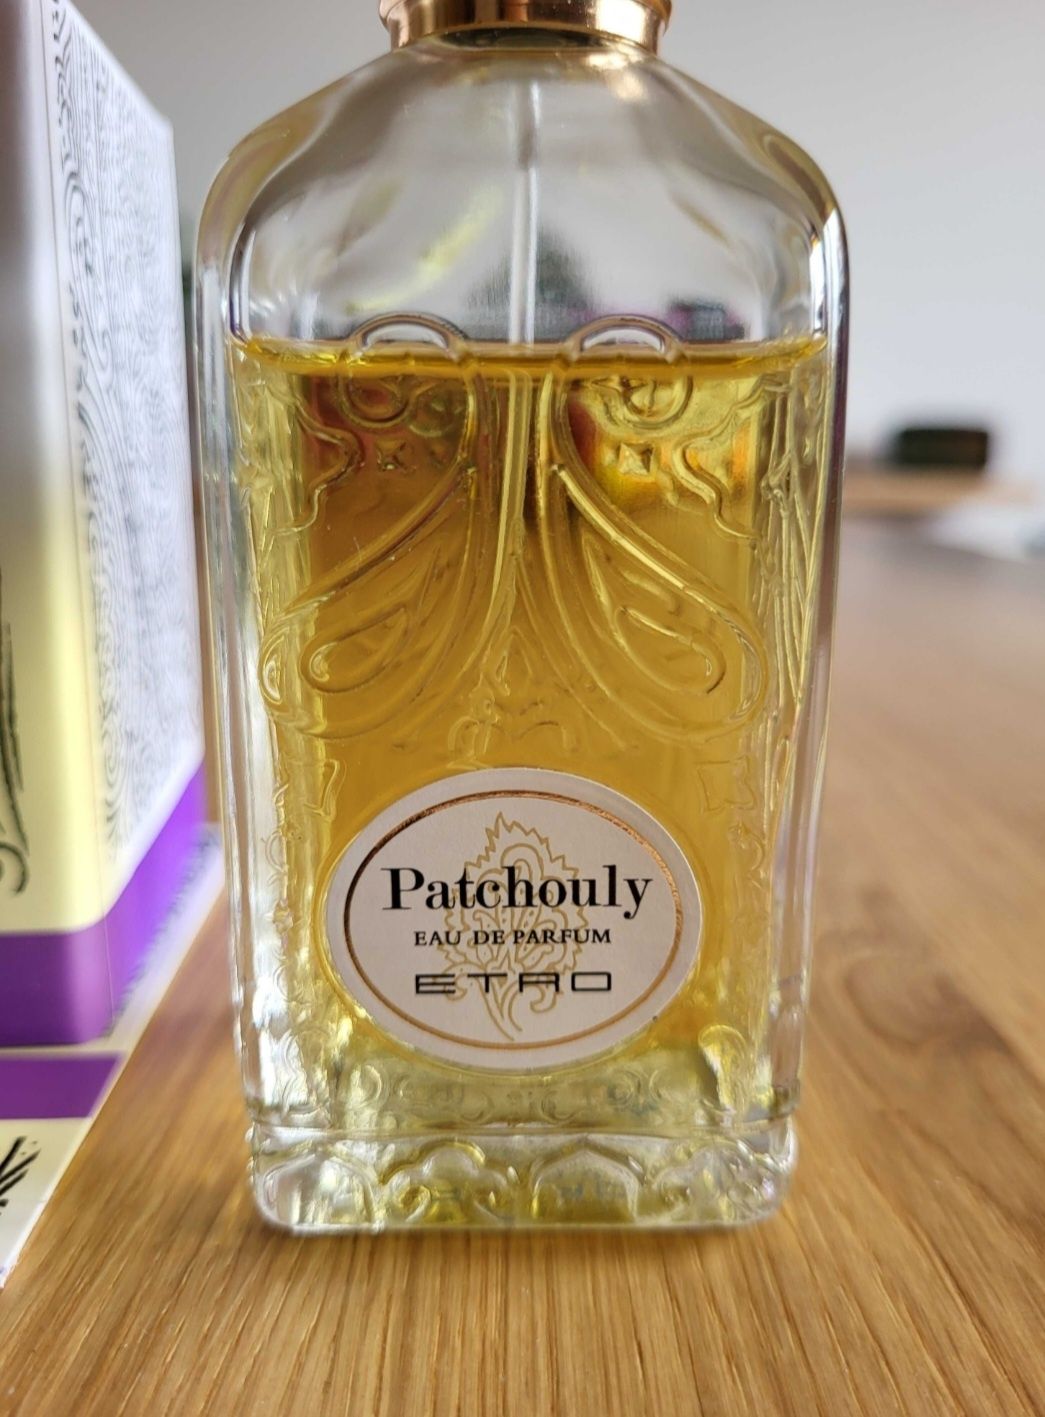 Etro Patchouly 10 ml (nie wysyłam przez olx)